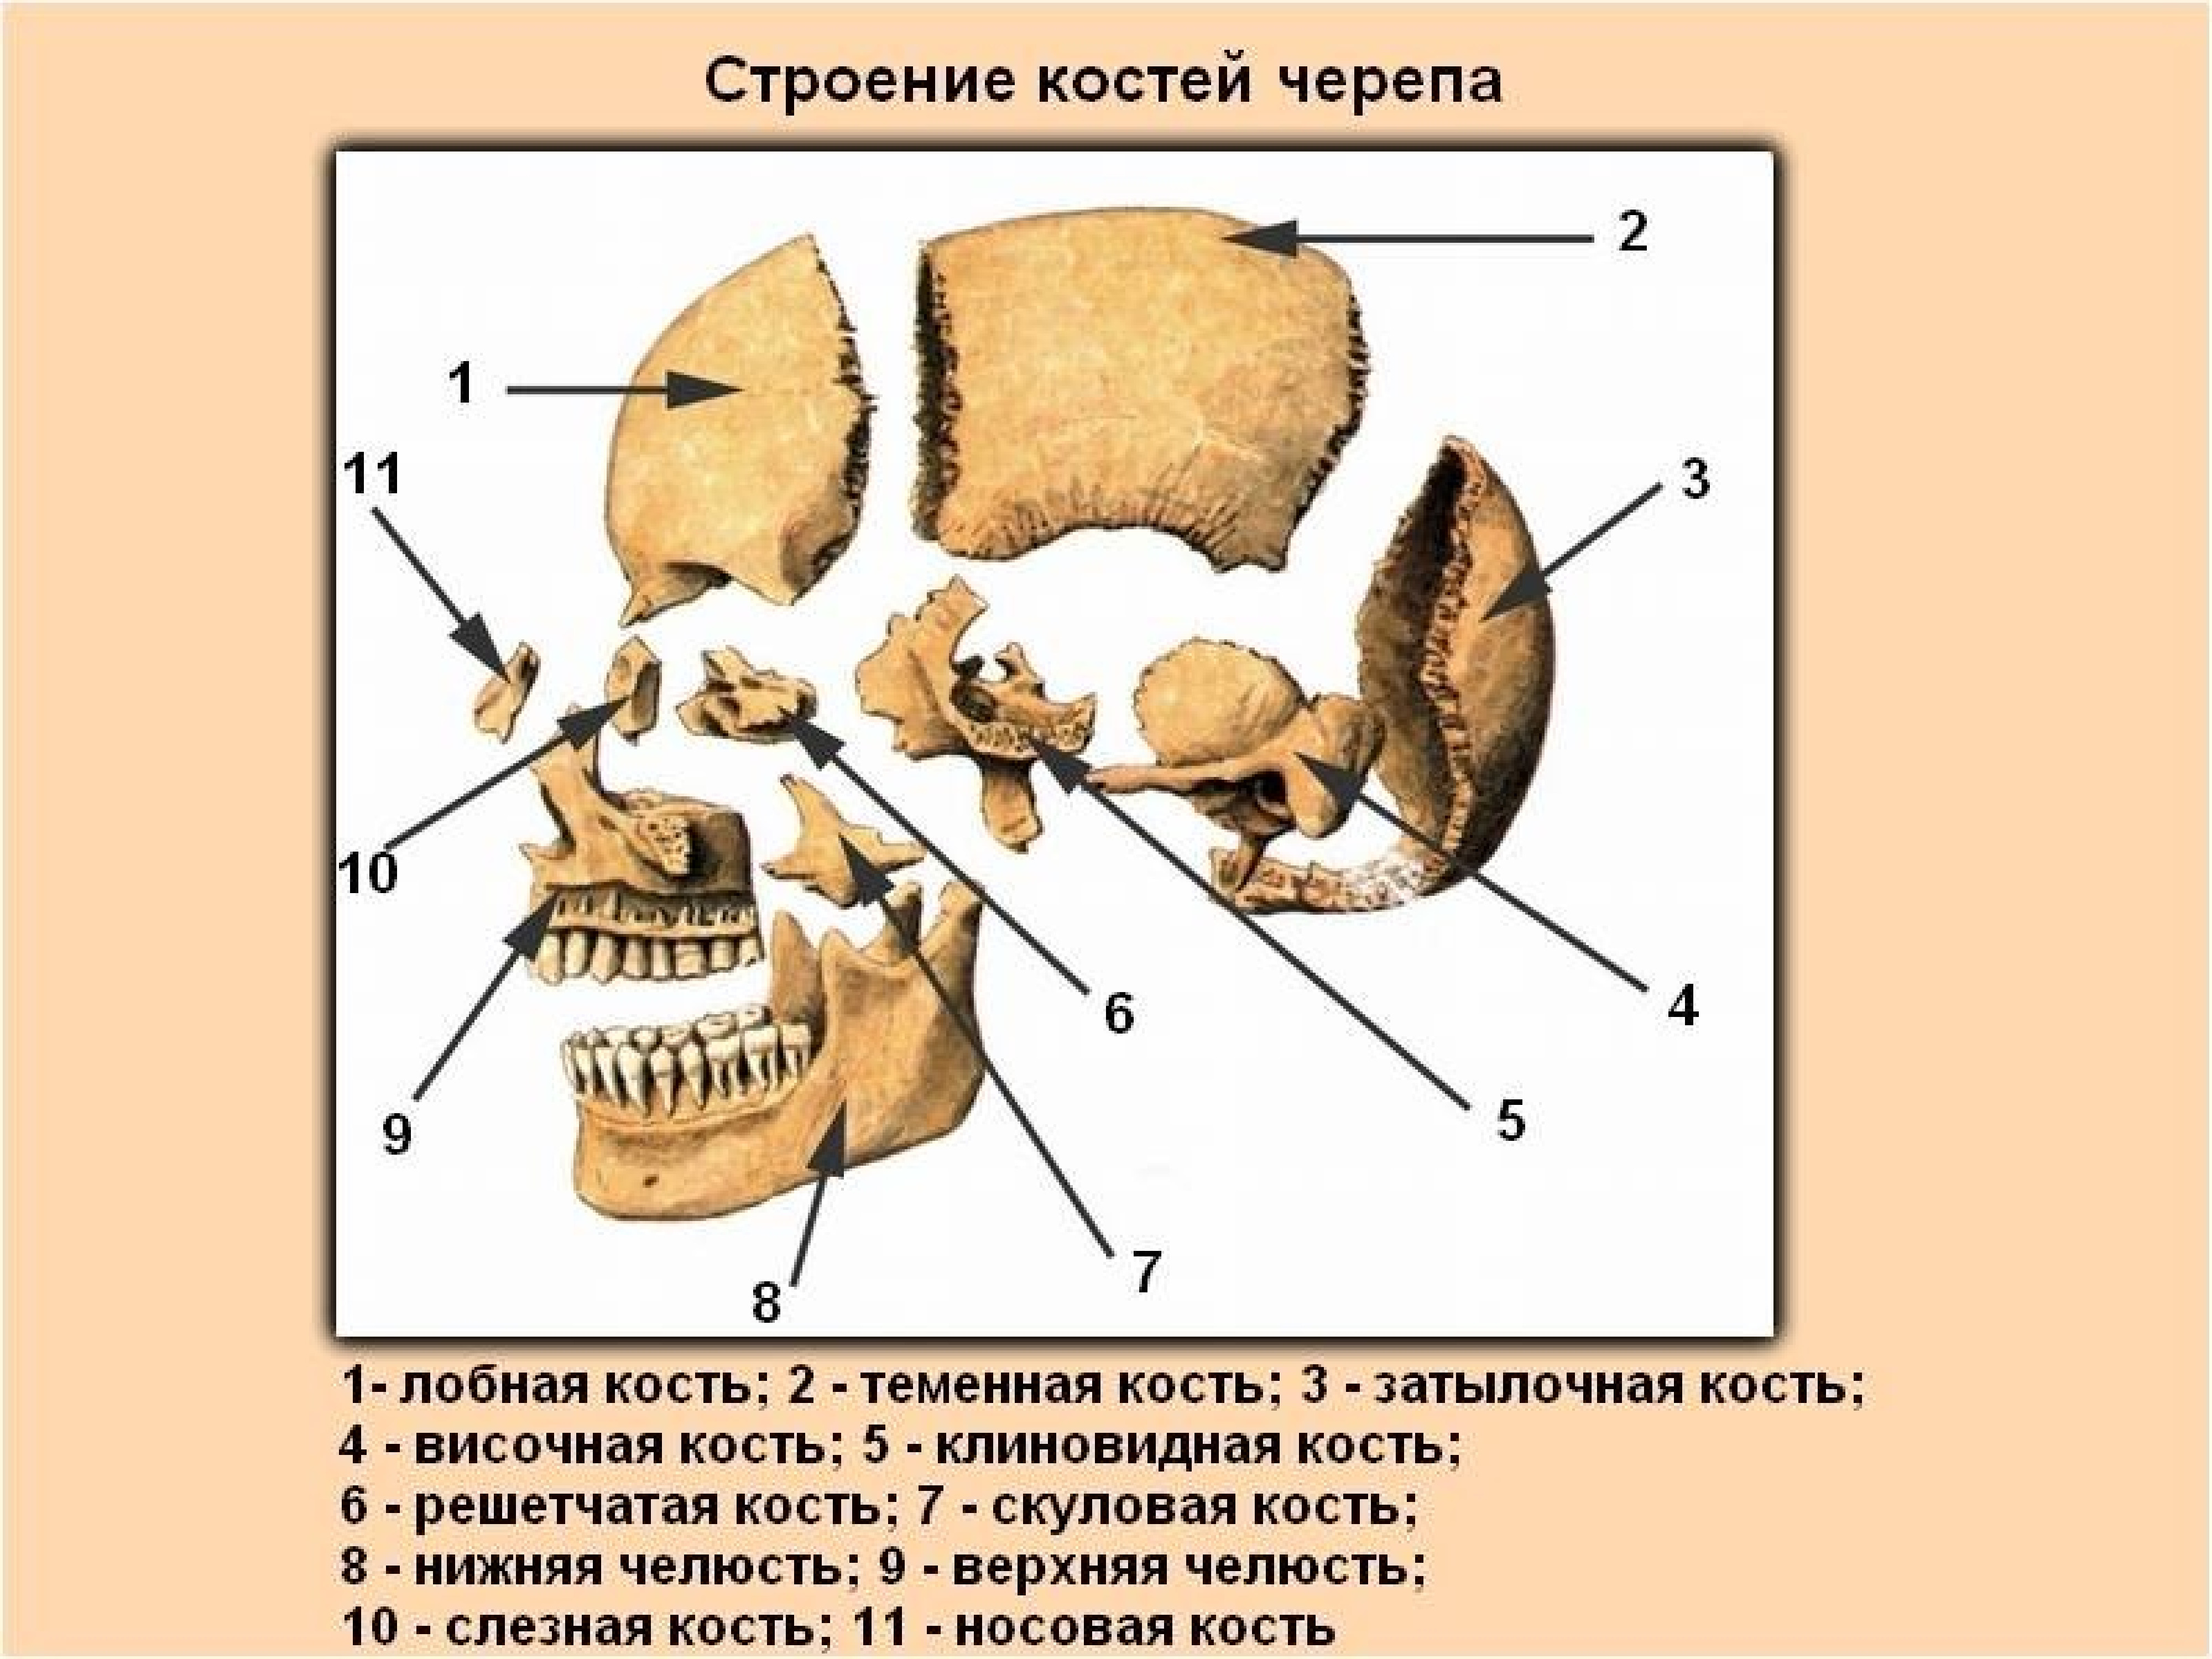 Состав кости черепа. Строение кости черепа человека. Строение костей черепа человека анатомия. Строение костей головы человека. Череп человека с названием костей.